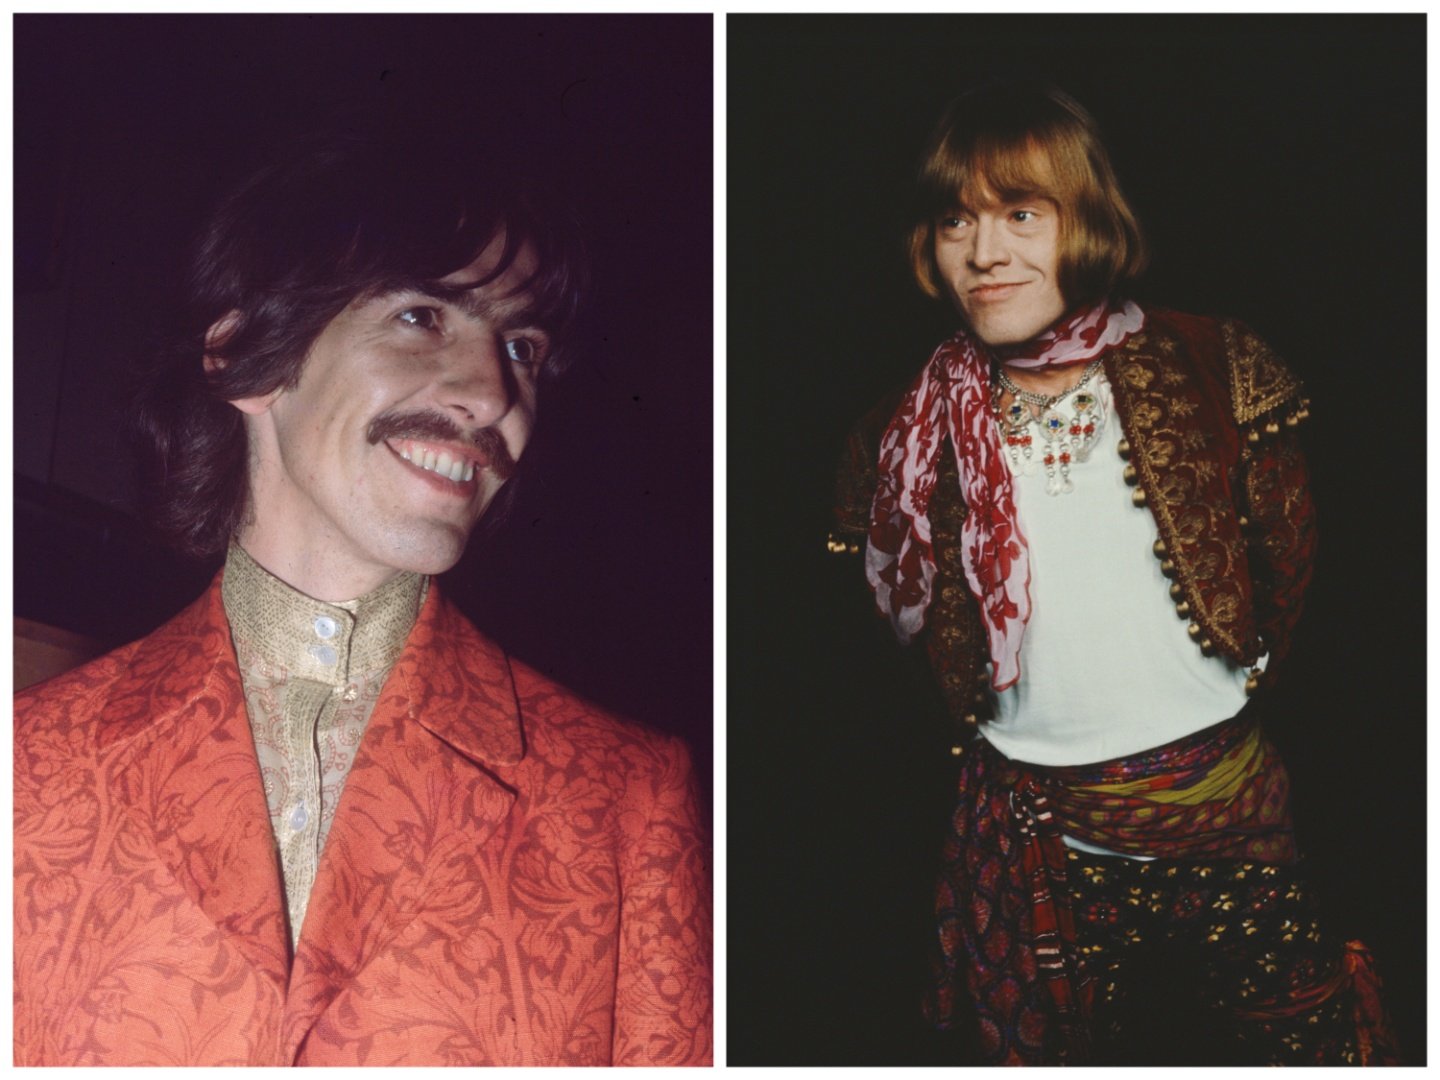 George Harrison wears an orange jacket. Brian Jones wears a scarf and necklace.